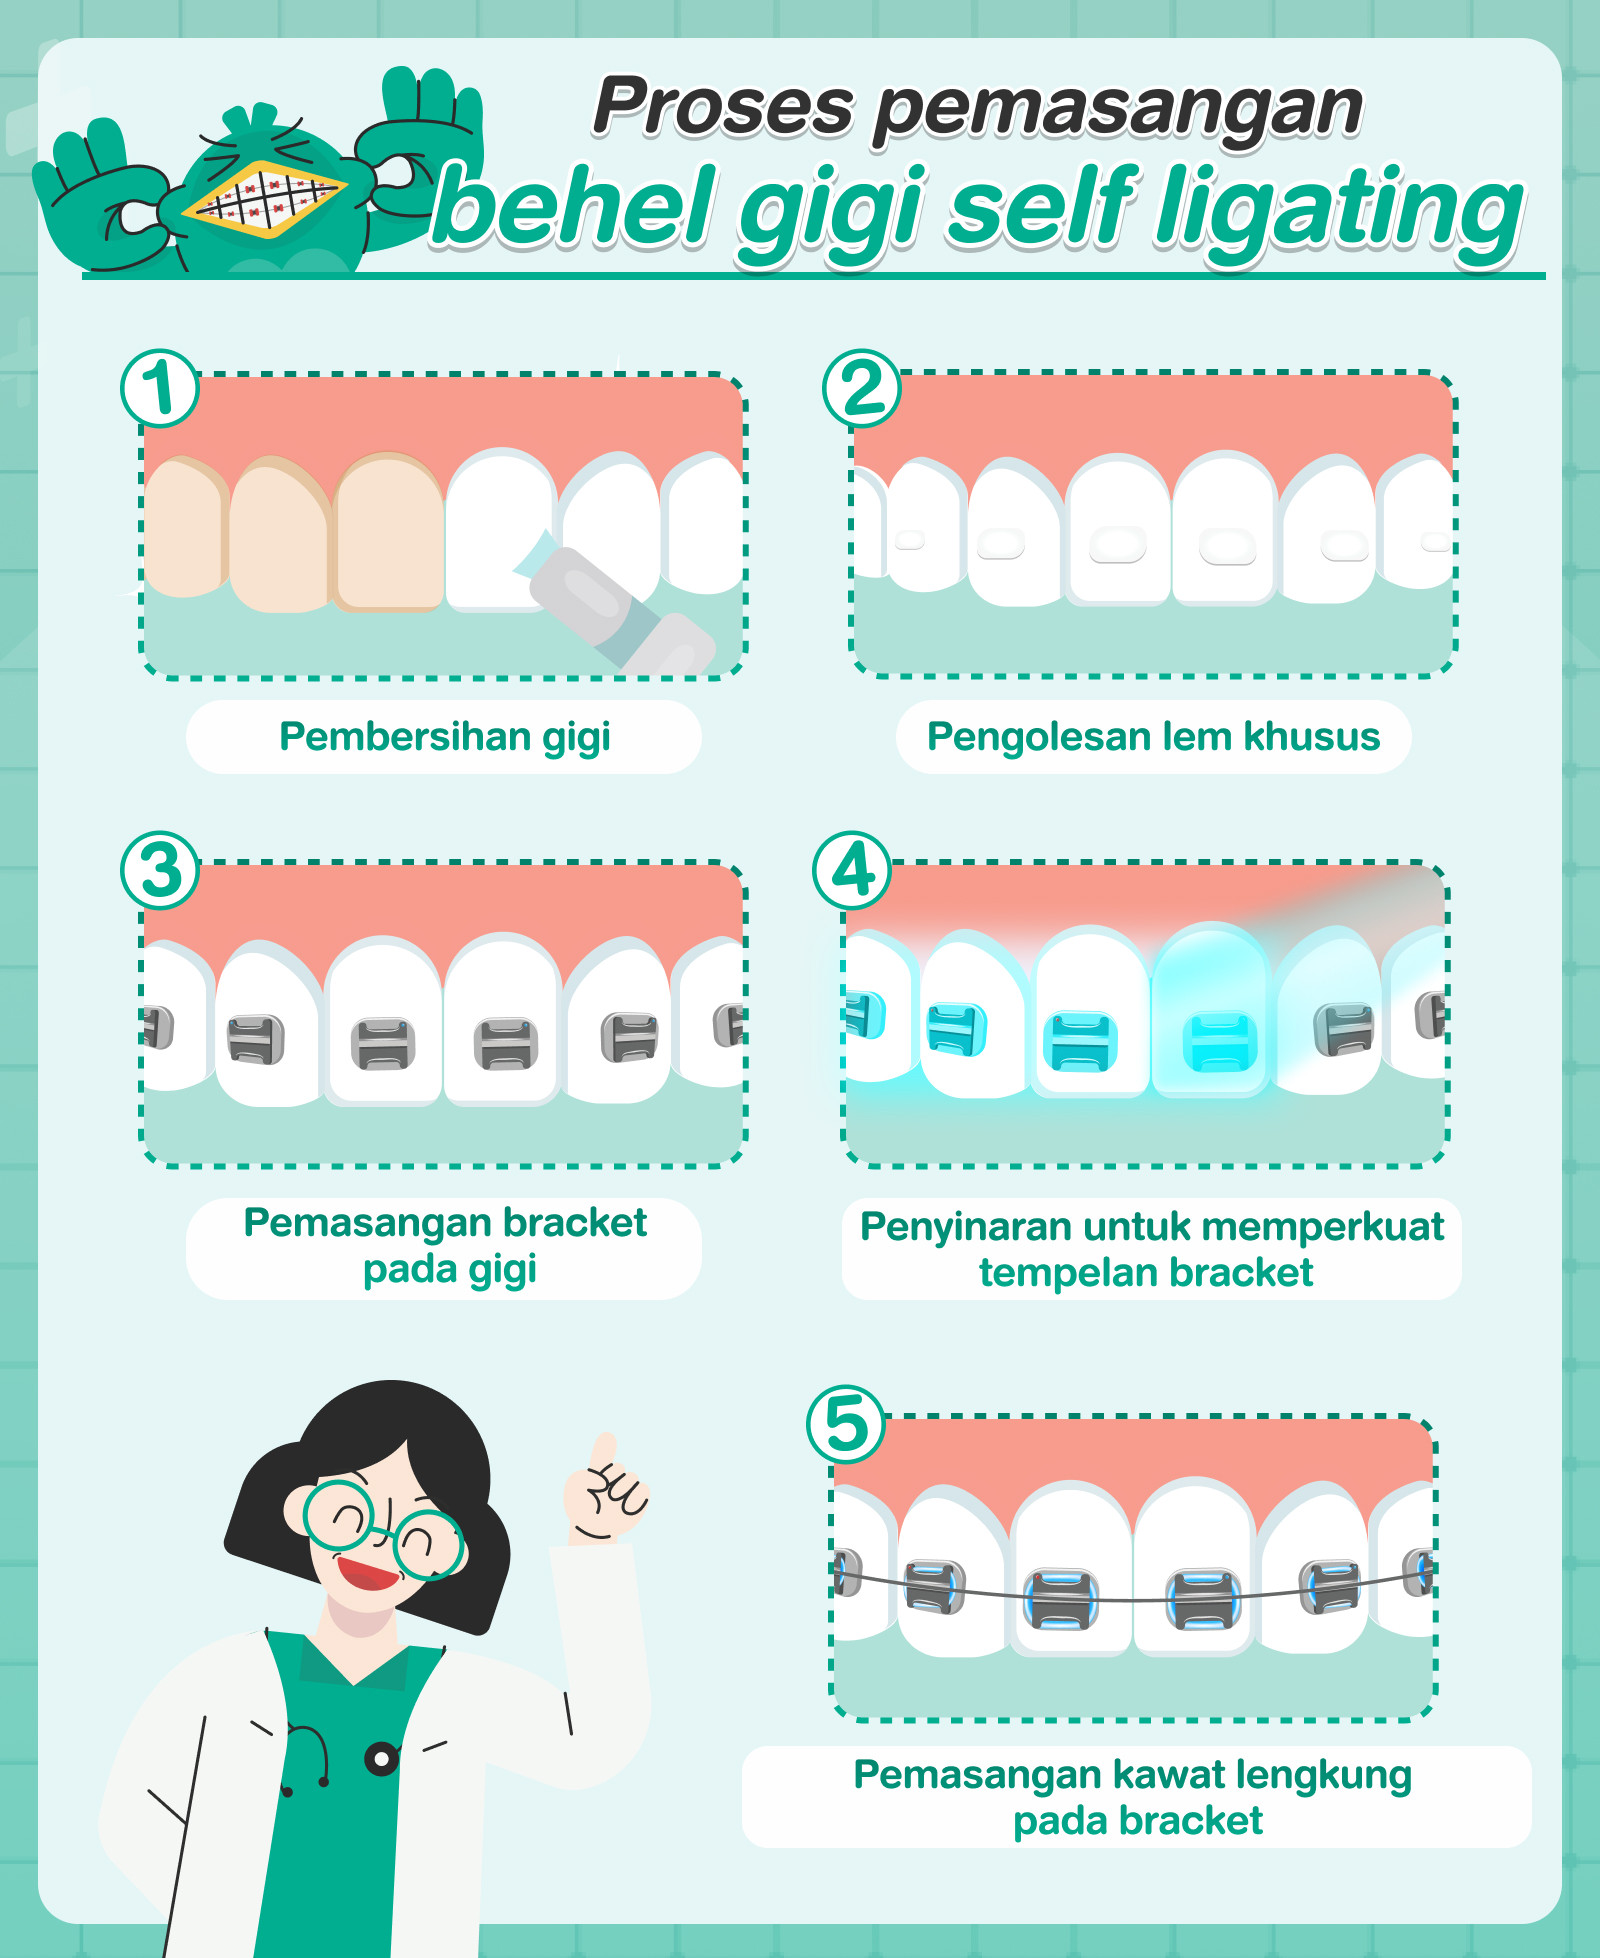 Proses Pasang behel gigi self ligating